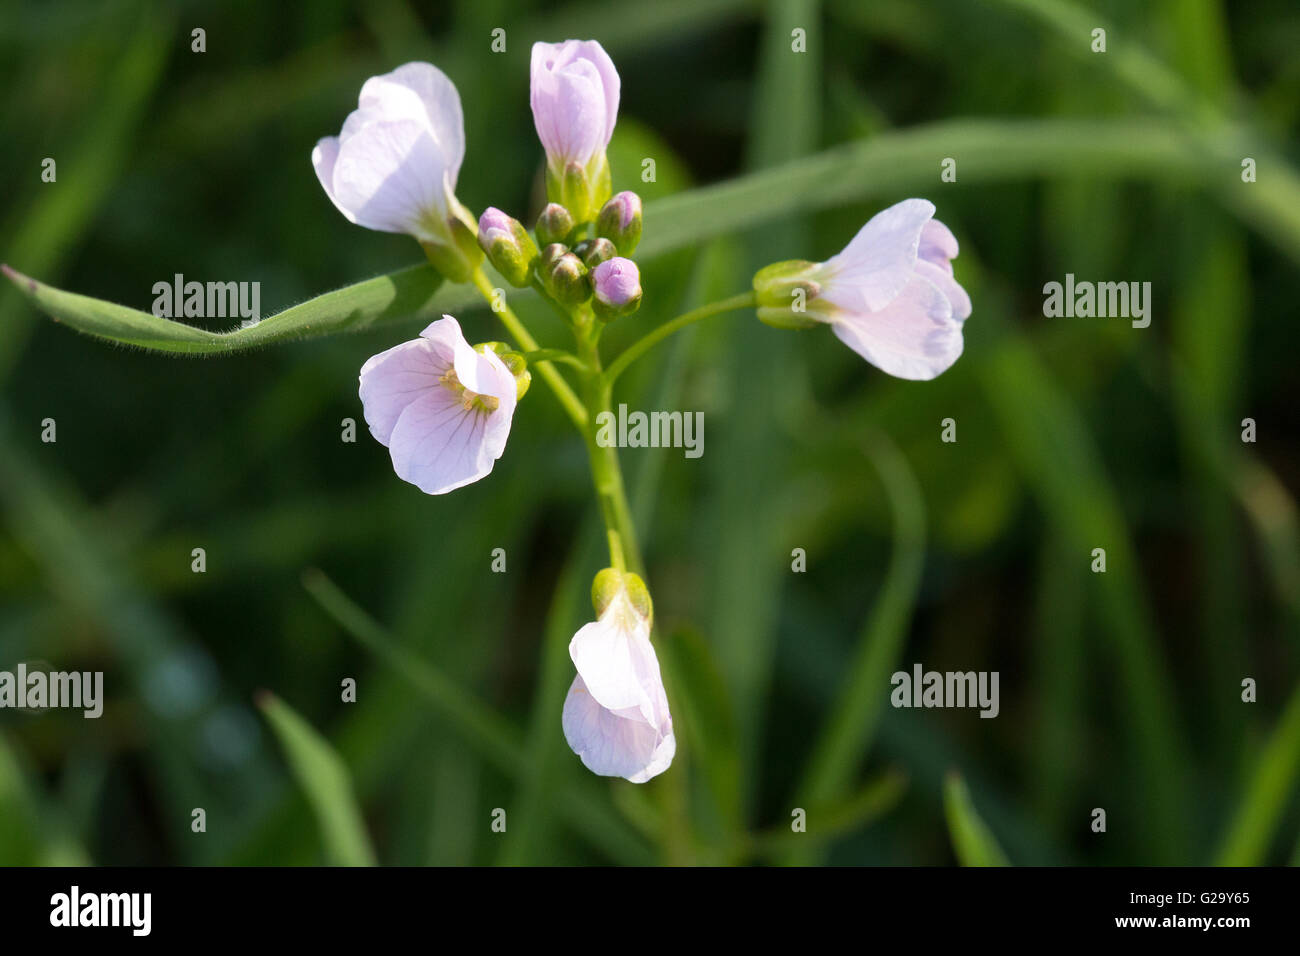 Wiesen Schaumkraut mit Blüten und Knospen  Meadowfoam seed with blossoms and buds Stock Photo